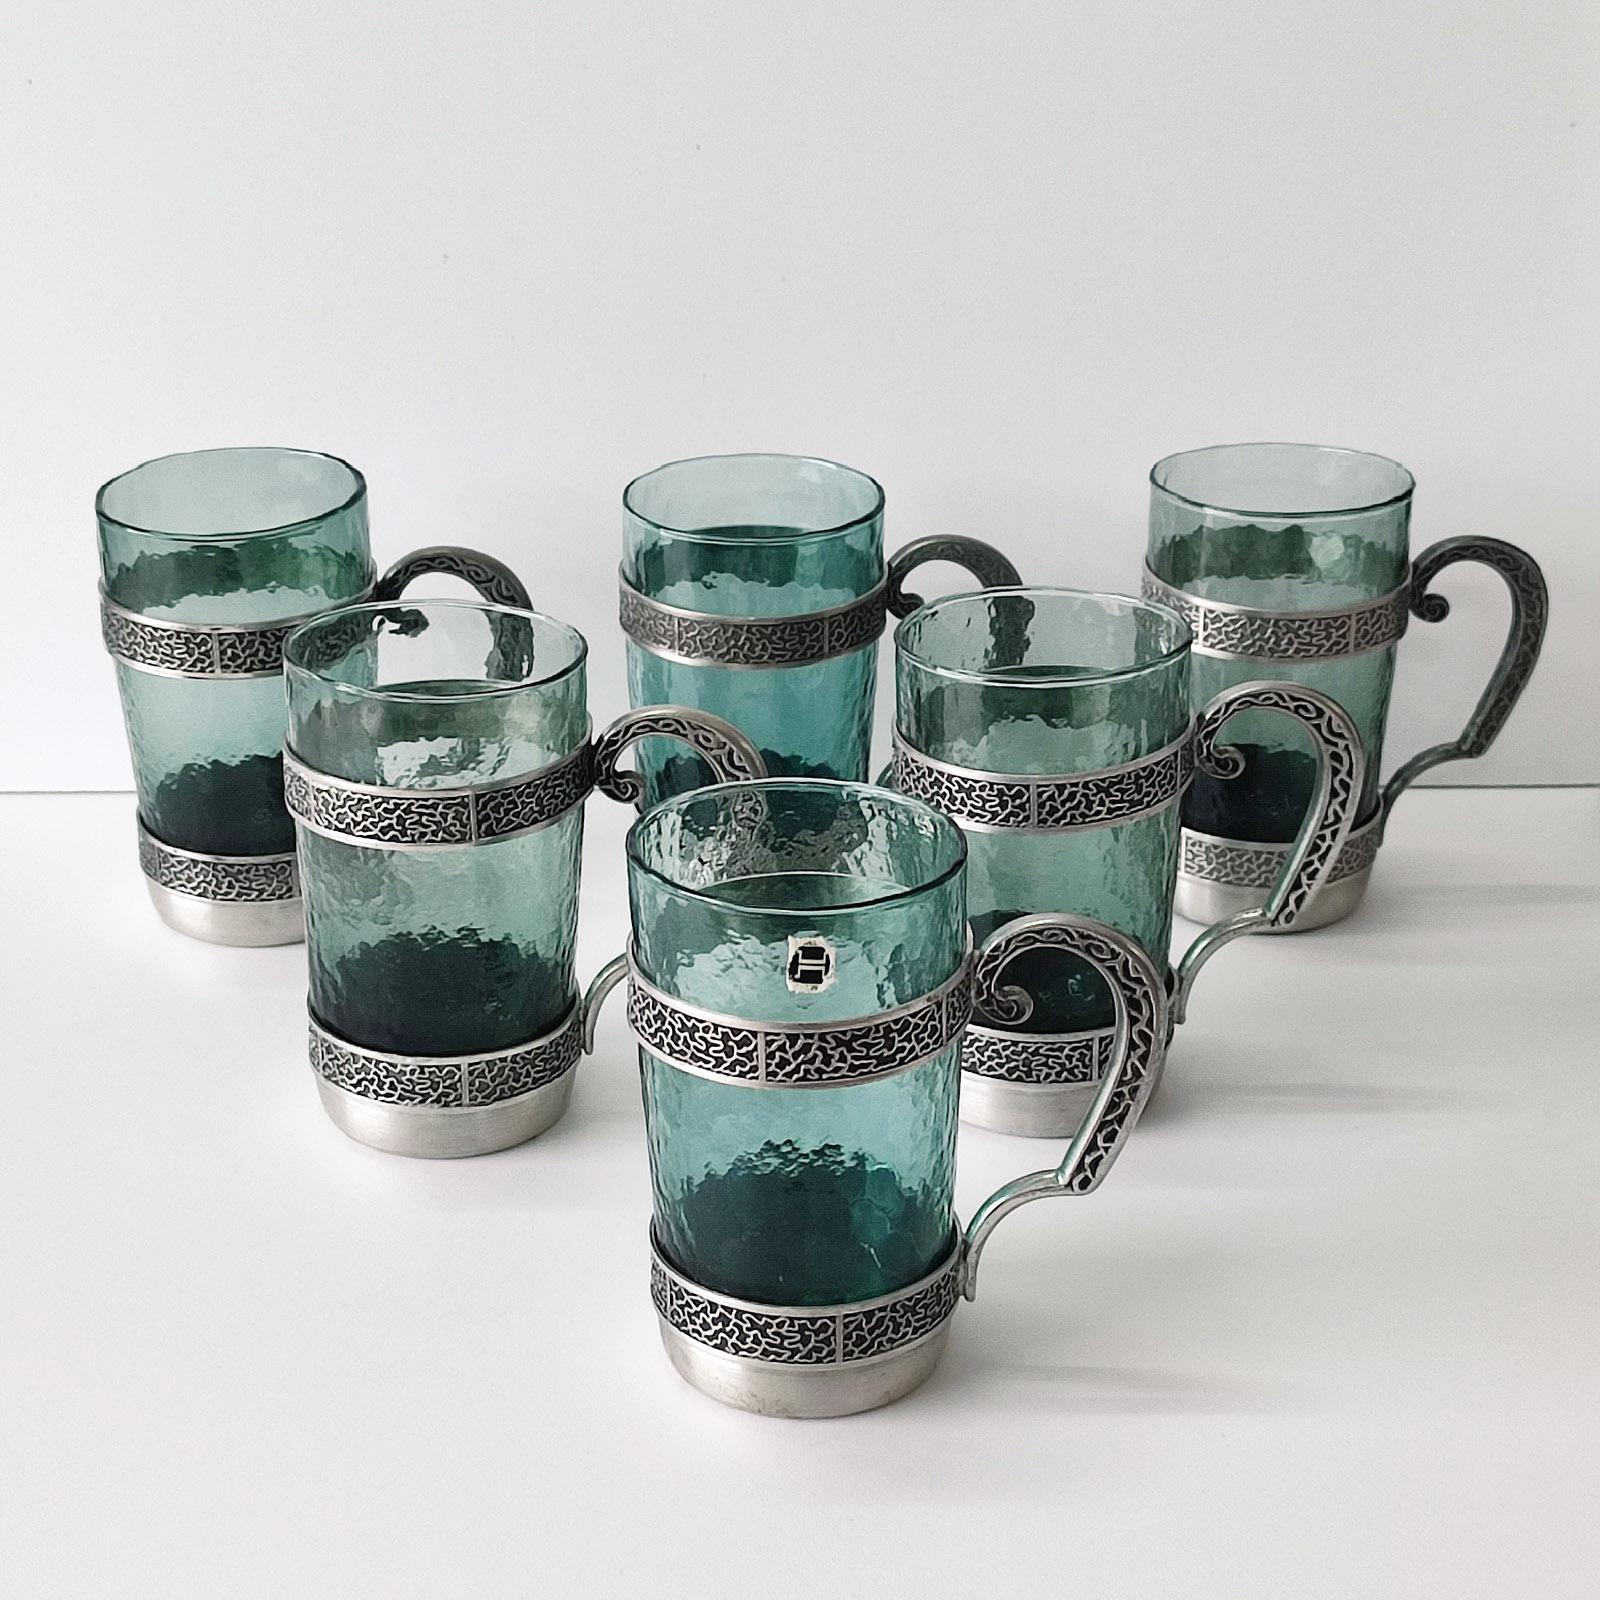 Art Deco Satz von 6 Tassen Glas & Zinn Tassen Norwegen.
In sehr gutem gebrauchten Zustand, kaum benutzt. Auf dem Boden gestempelt 'ITB NORWAY TINN' und 99.
Abmessungen: 11 x 7 x 12 cm.
Wunderschöne Kombination aus stilisiertem Art-Déco-Muster auf